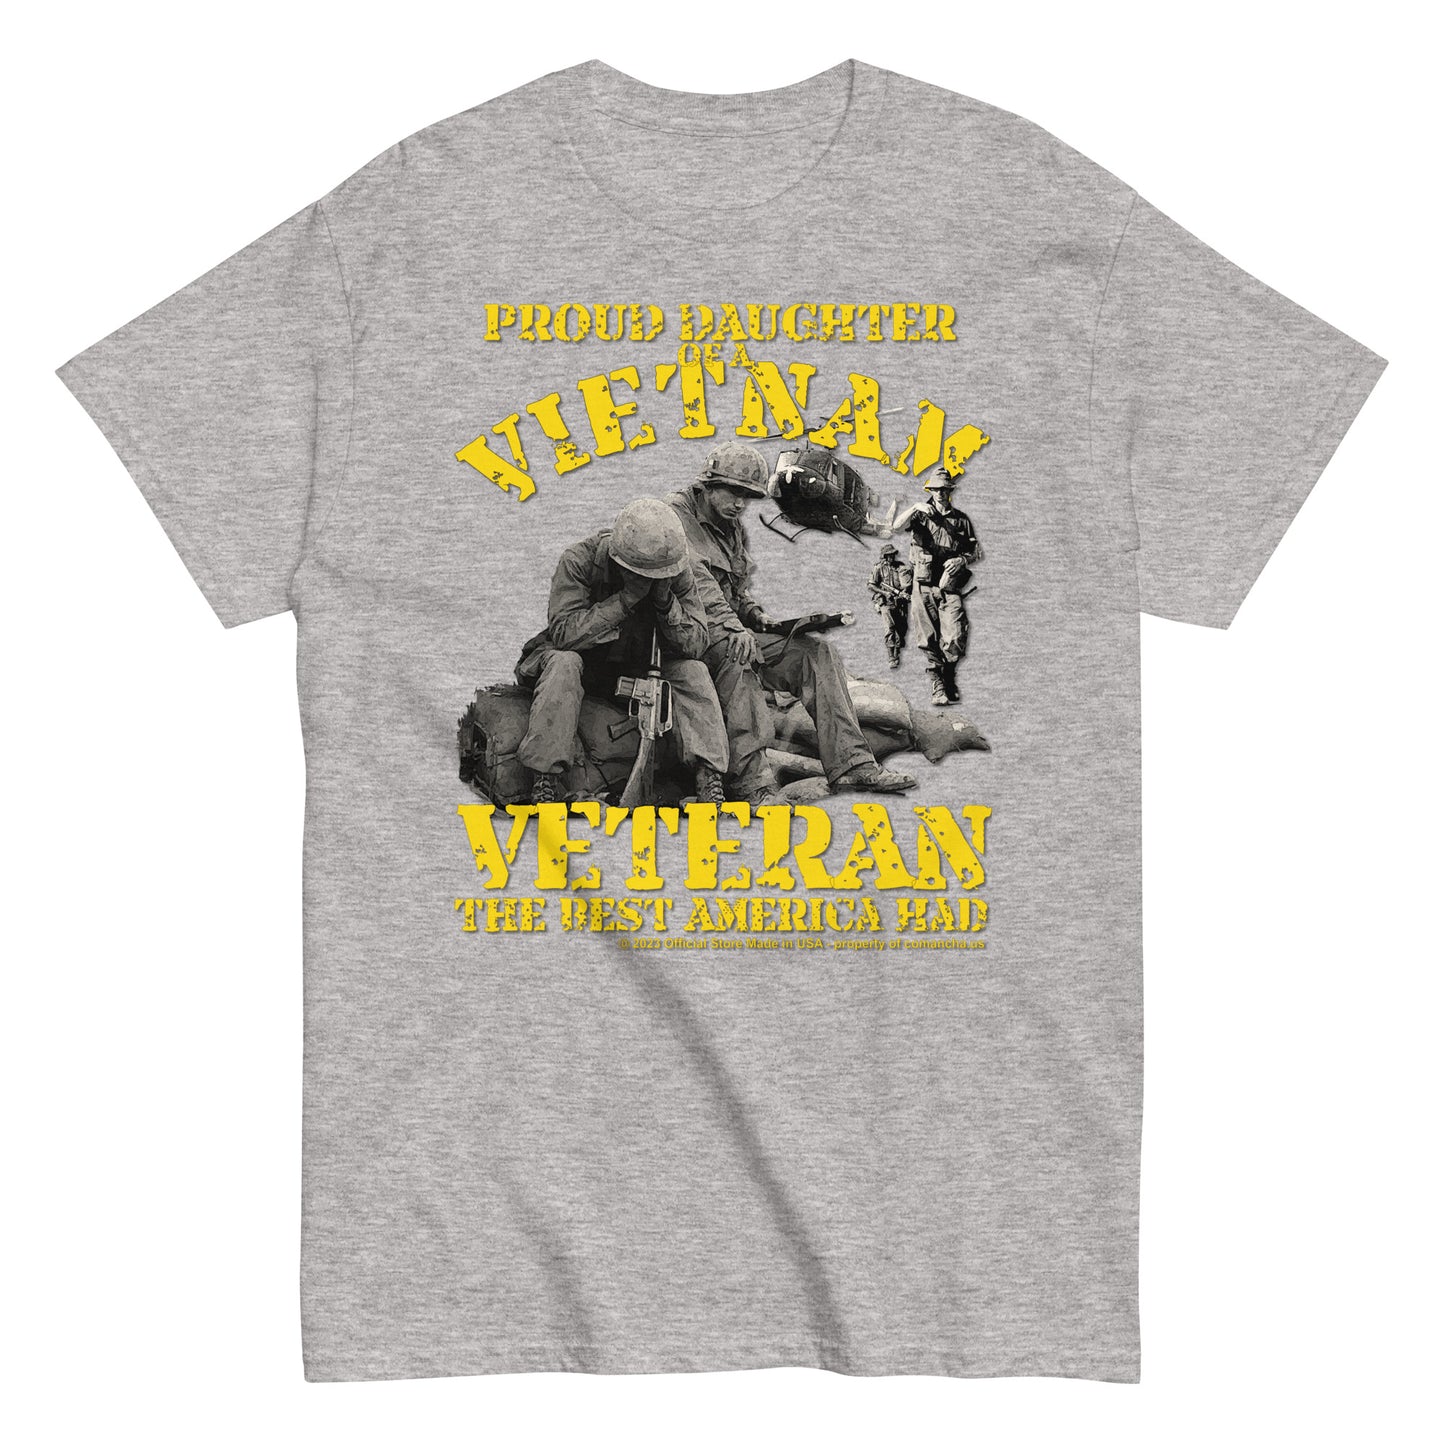 Proud Daughter of a Vietnam Veteran T-shirt, Vietnam veterans t-shirt, Vietnam war tee, us army veterans tee,Armay veterans t-shirt,comancha graphics,